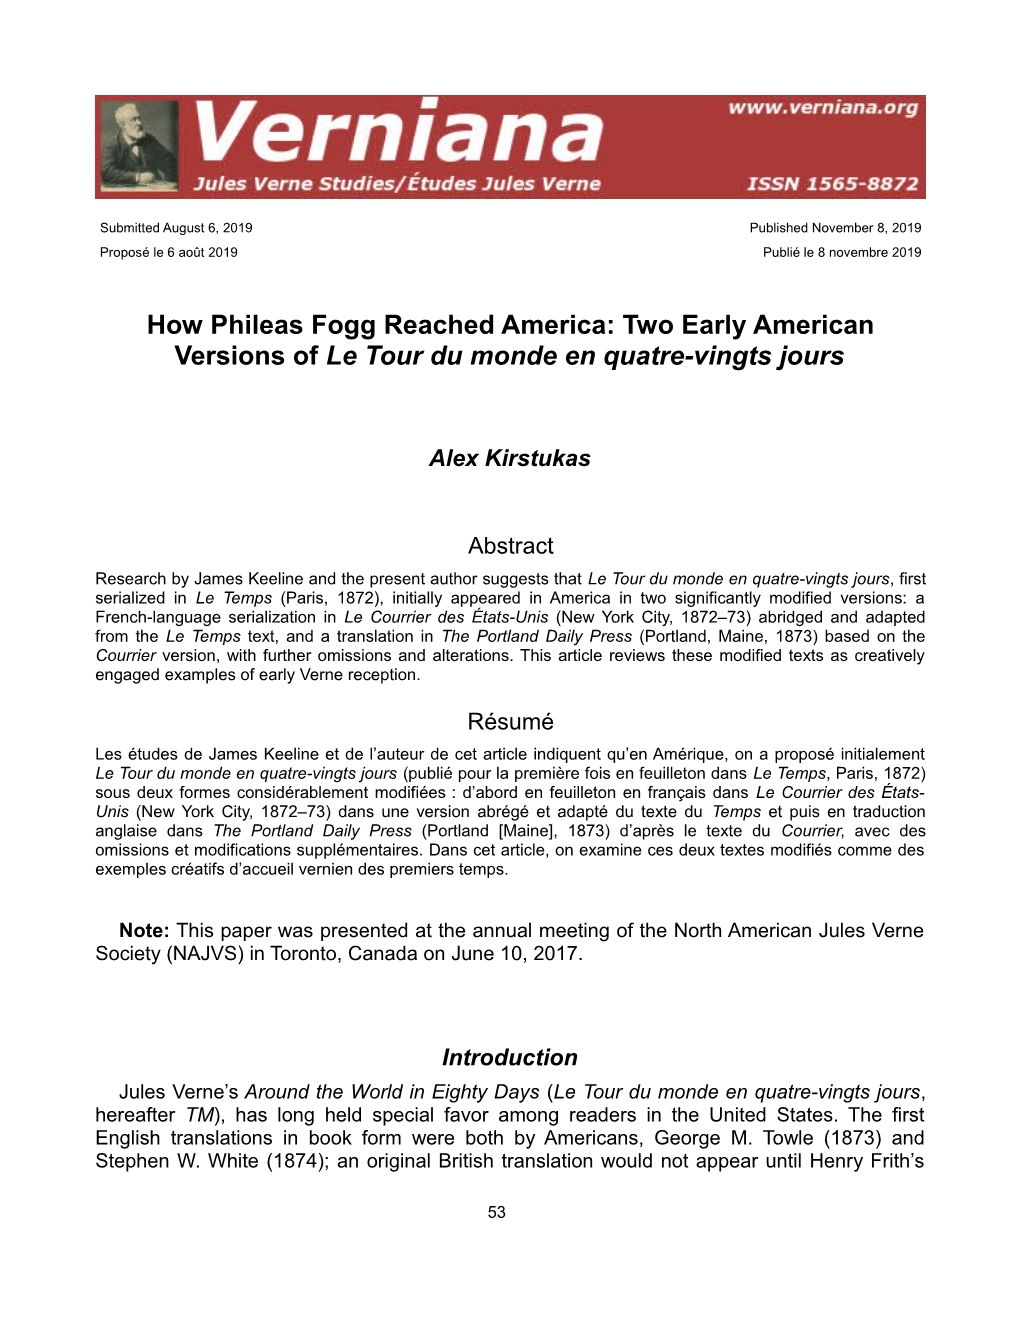 How Phileas Fogg Reached America: Two Early American Versions of Le Tour Du Monde En Quatre-Vingts Jours